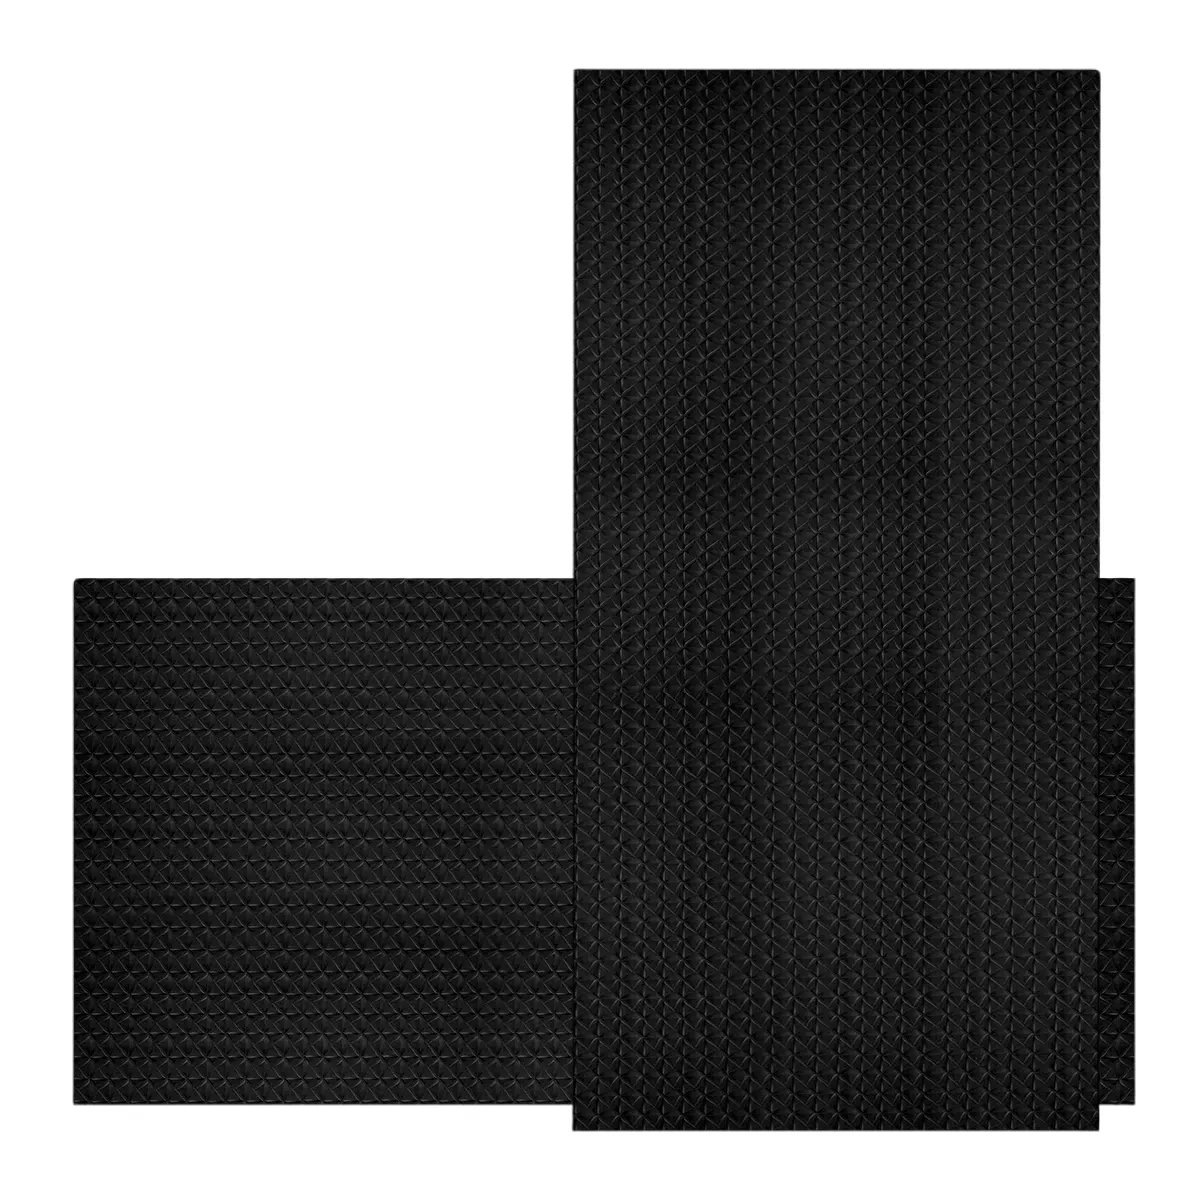 PVC 2x4 потолочная плитка зеленая защита окружающей среды A2 Класс огнестойкая водонепроницаемая и устойчивая к плесени ПВХ потолочный черный 2x4 фута